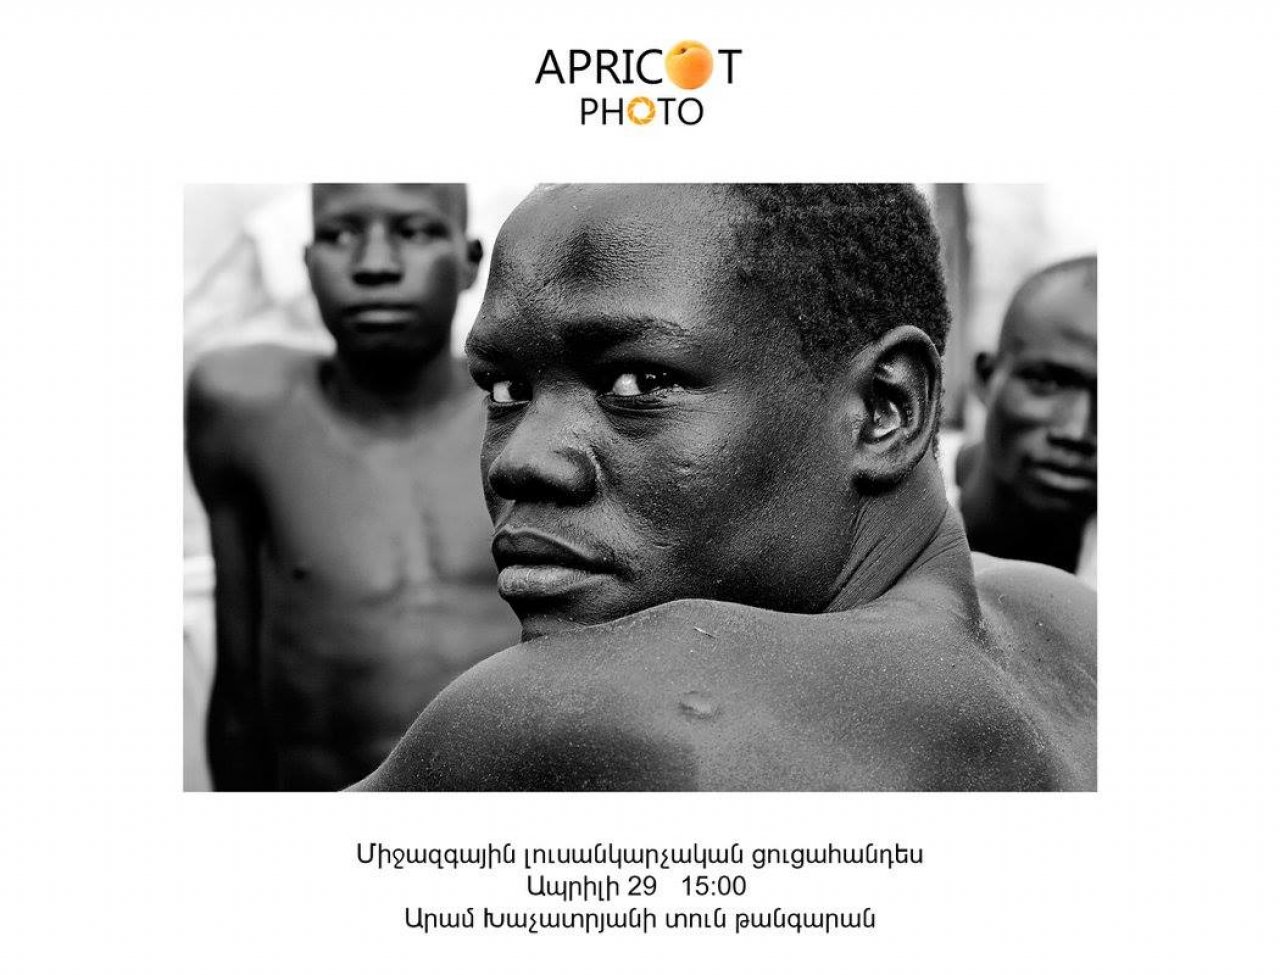 Apricot միջազգային ֆոտոմրցույթի եզրափակիչ ցուցադրությունը